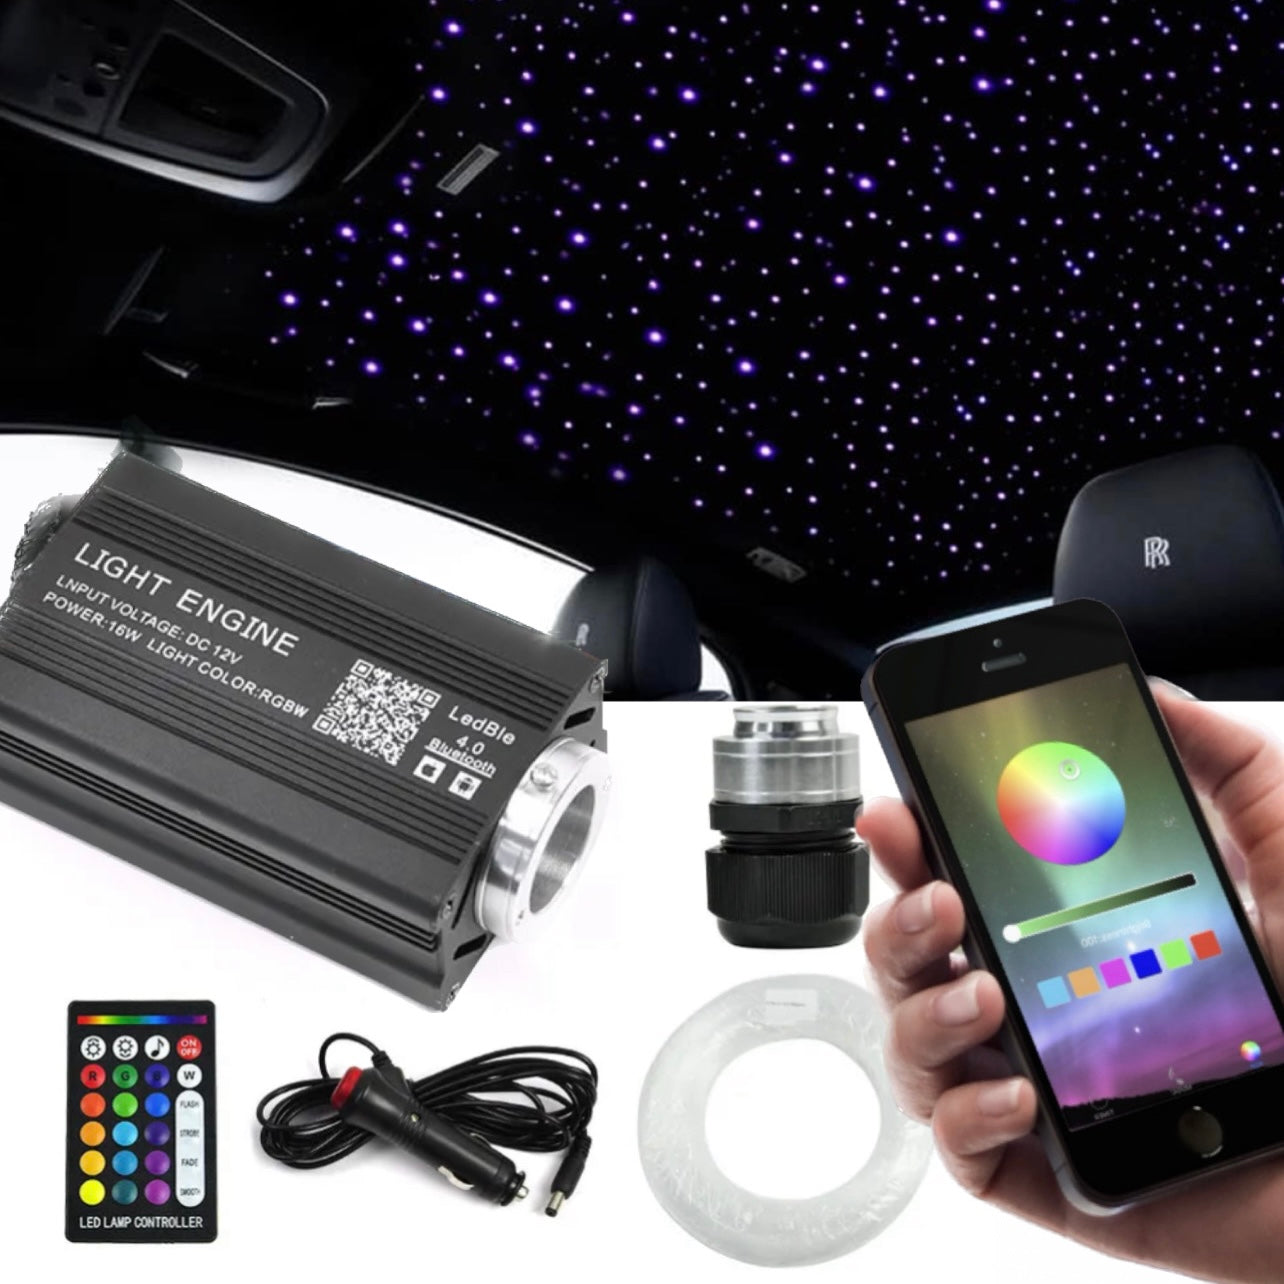 Starlight Headliner Kit (500 Stars) – LED All The Things